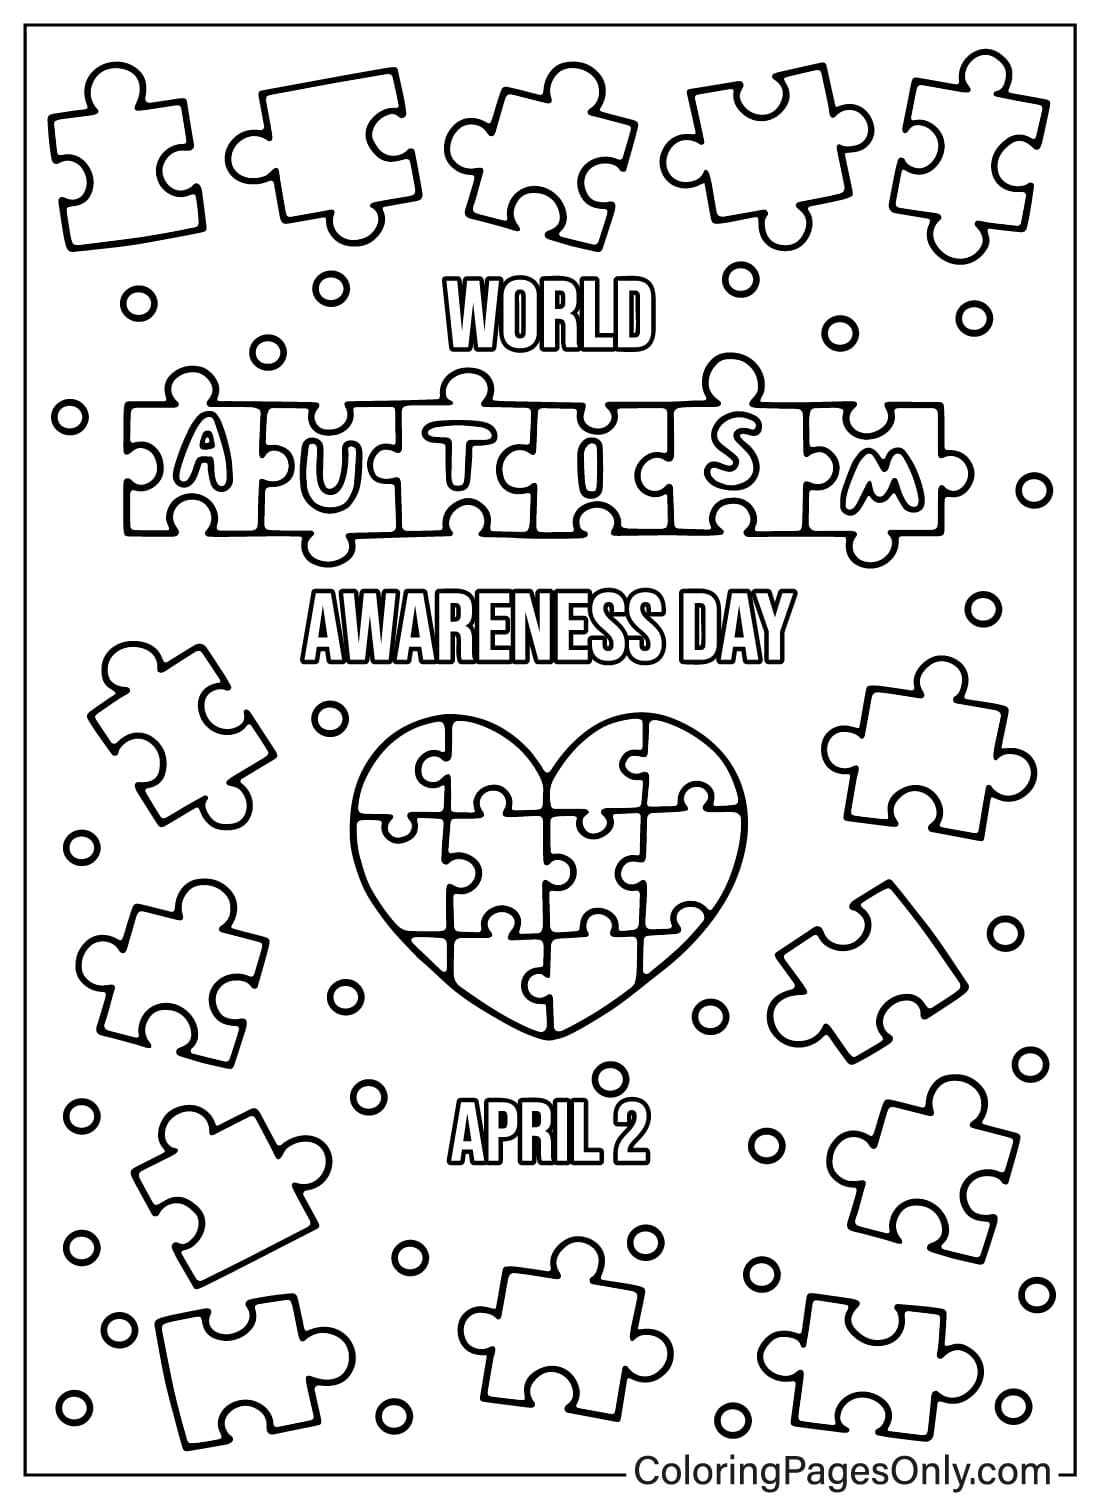 Imágenes de la página para colorear de concienciación sobre el autismo del Día Mundial de Concienciación sobre el Autismo